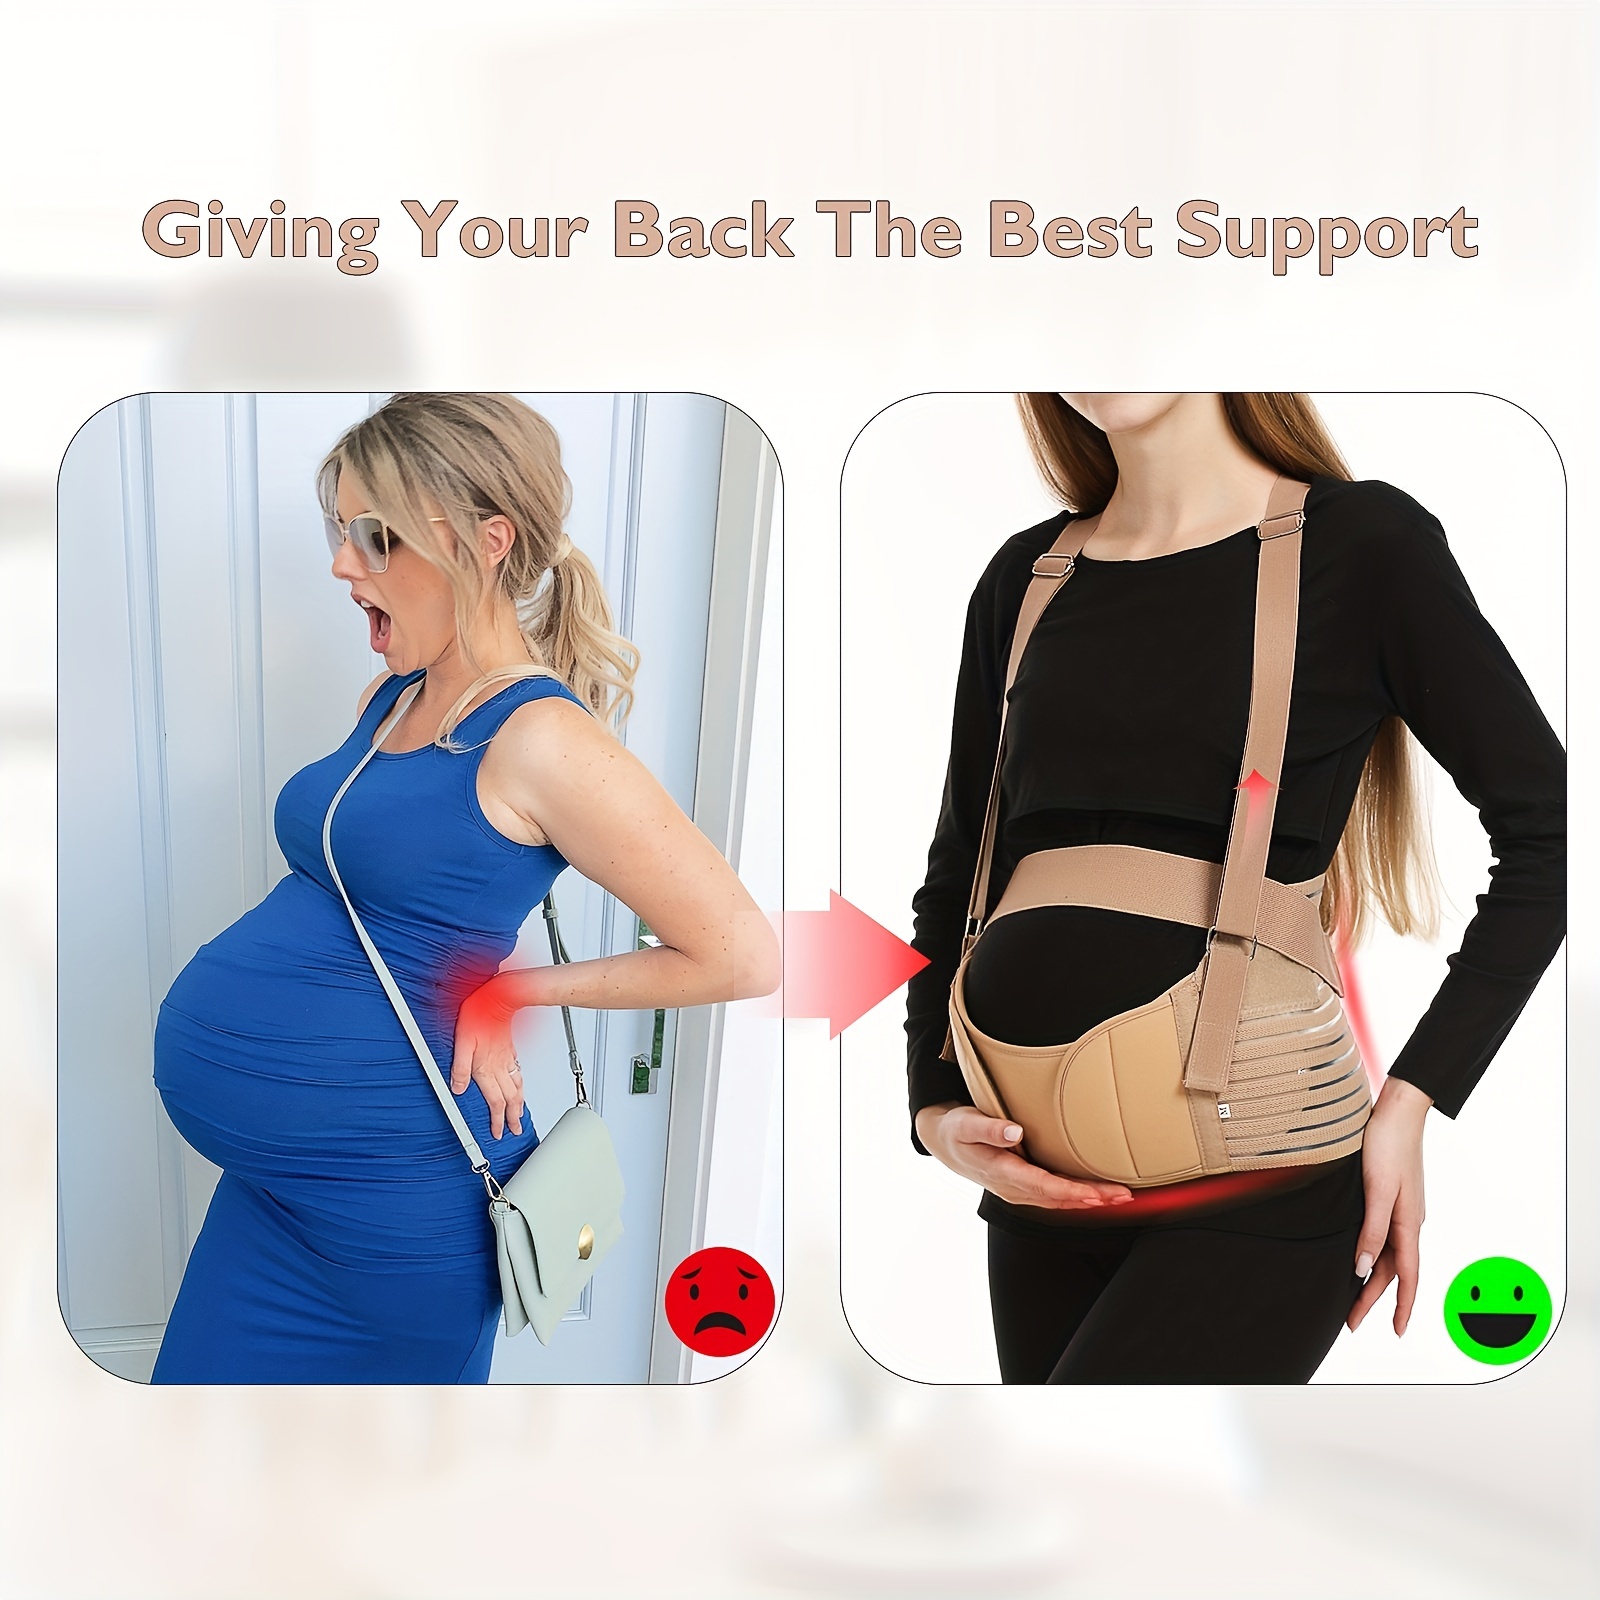 Post Pregnancy Belt Adjustable Best Quality